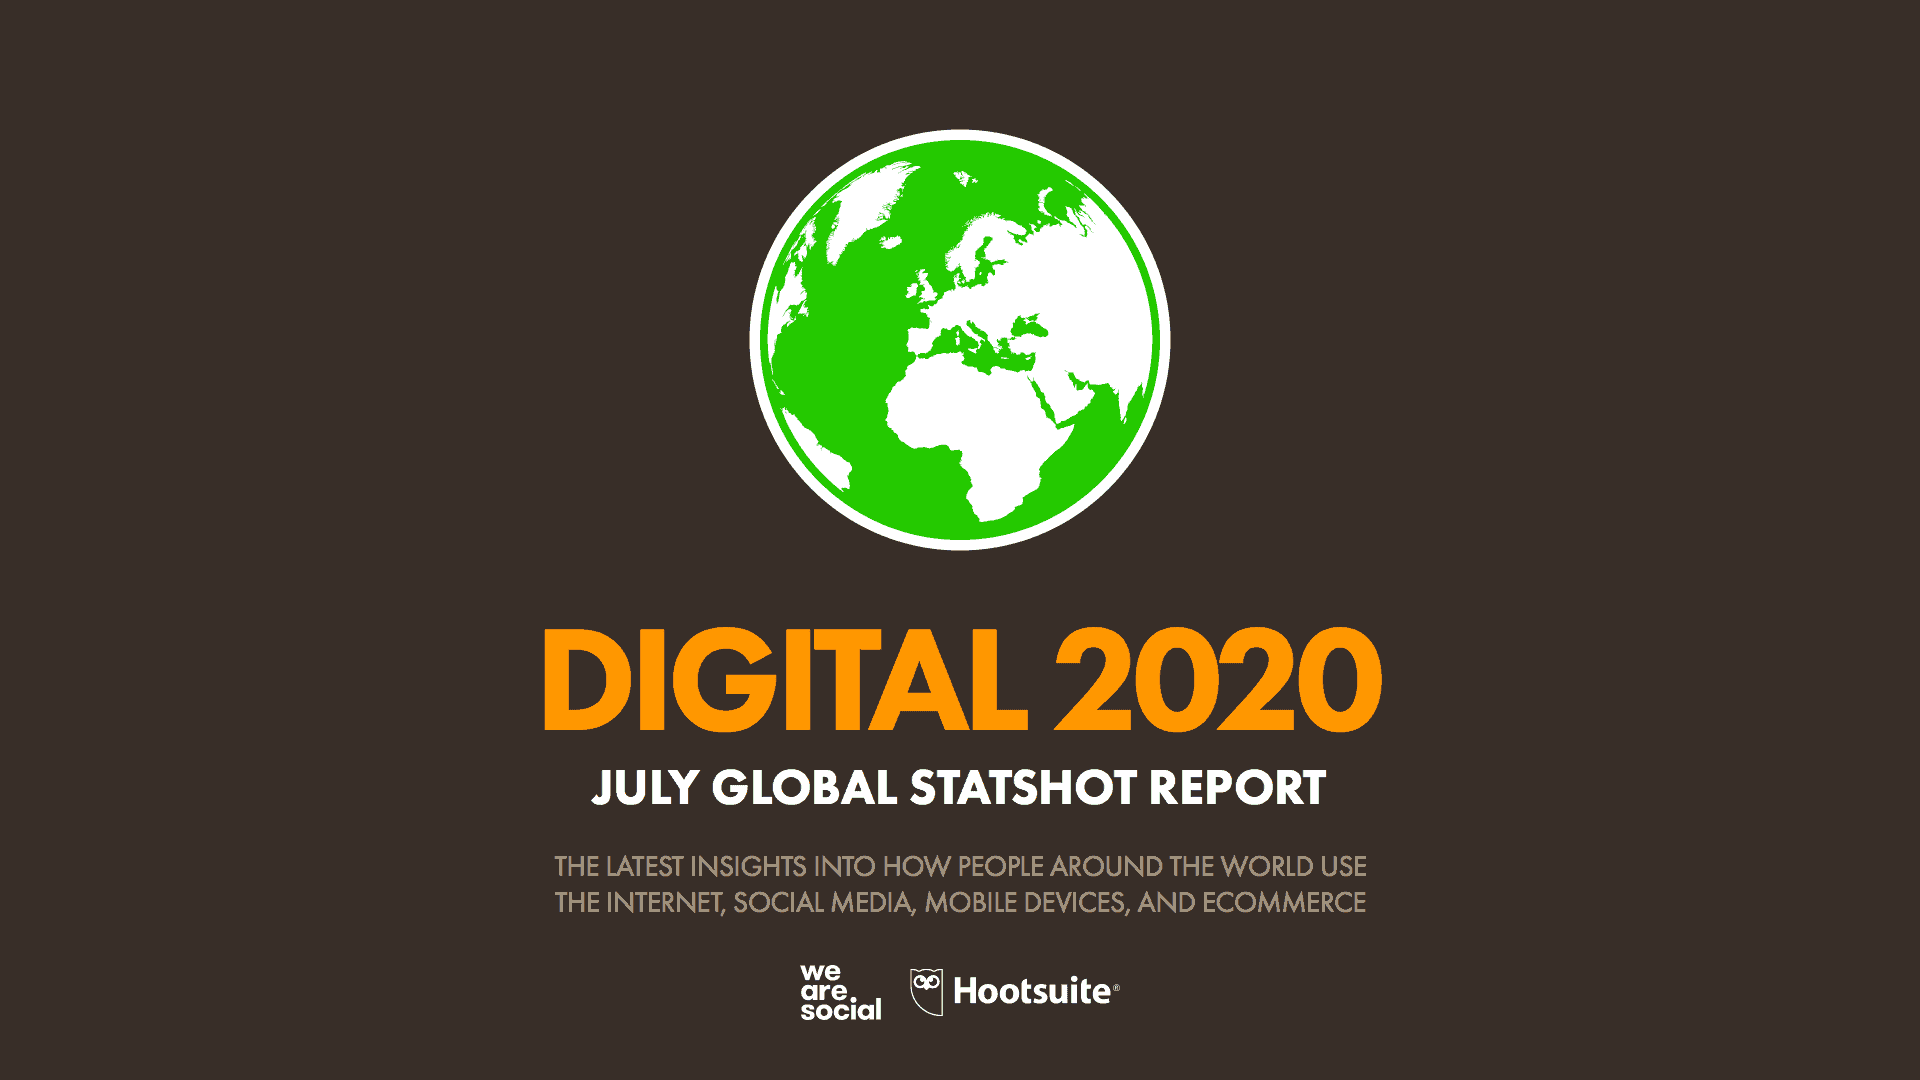 อัพเดทสถิติ Digital 2020 หลังโควิด19 จาก We Are Social